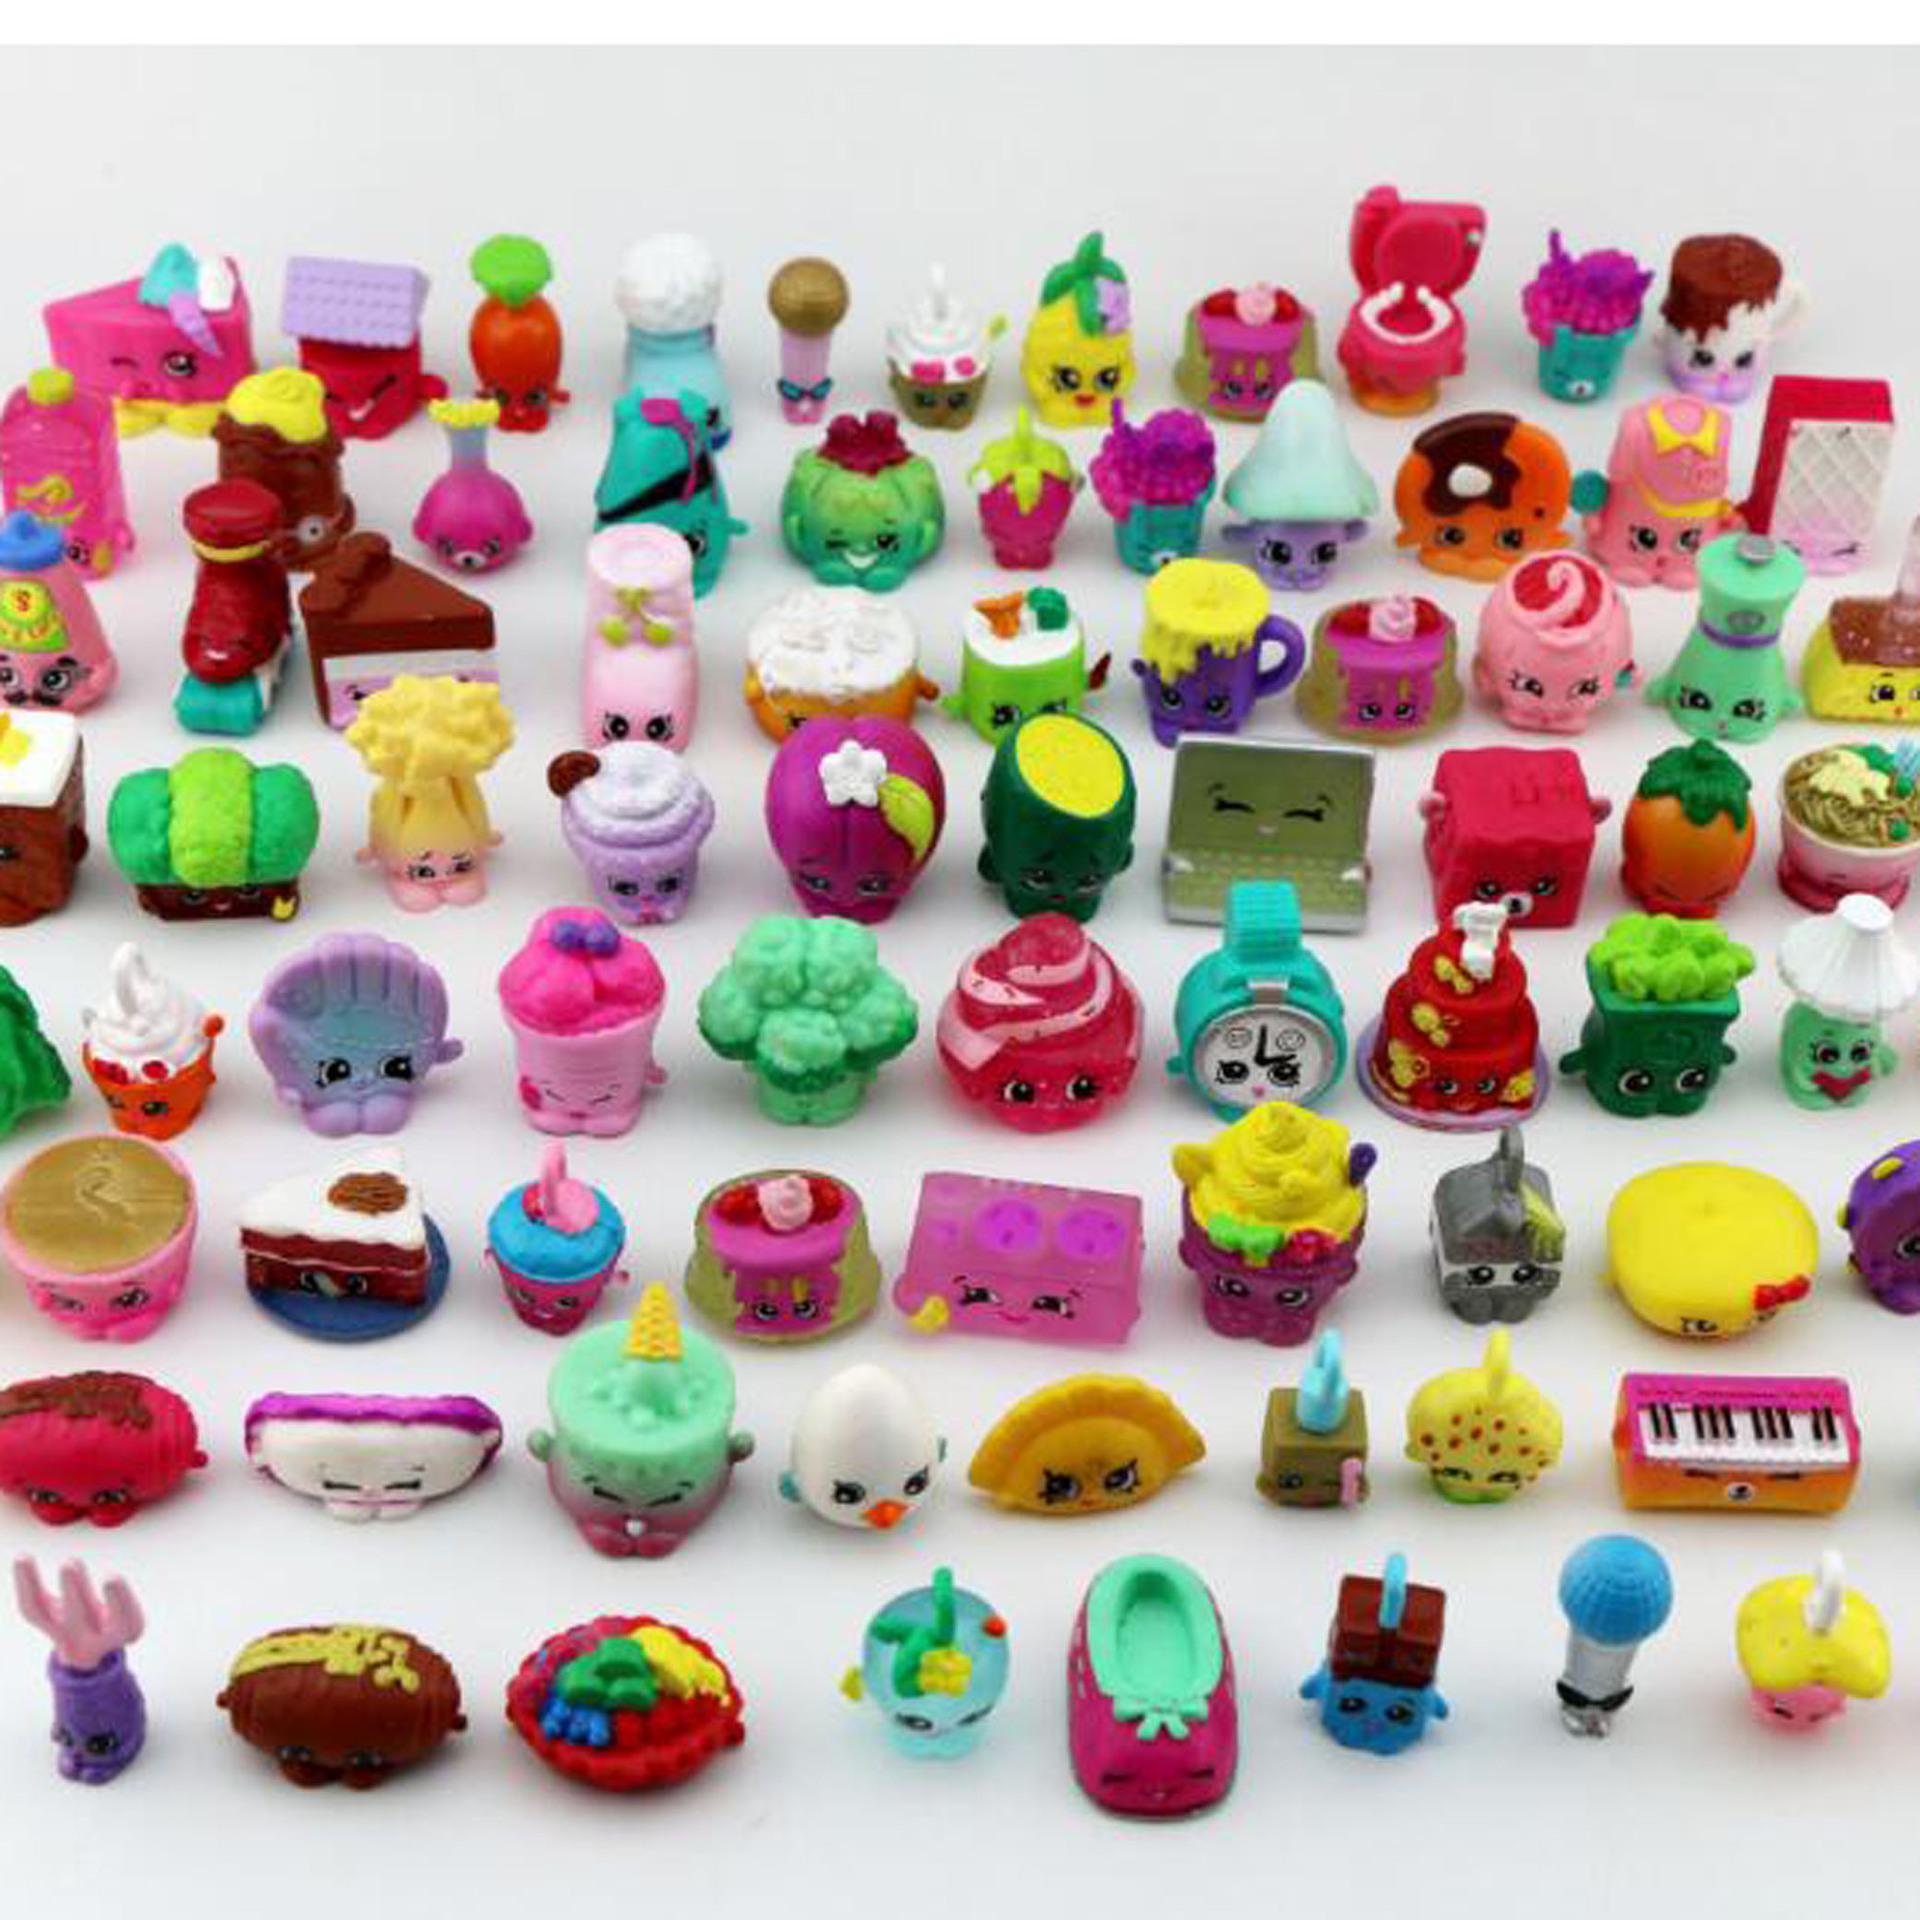 Изображение товара: Случайные 20 шт торговые тележки Аниме Фигурки игрушки модель редкая коллекция подарок образование мальчики и девочки игрушки Супермаркет игрушки